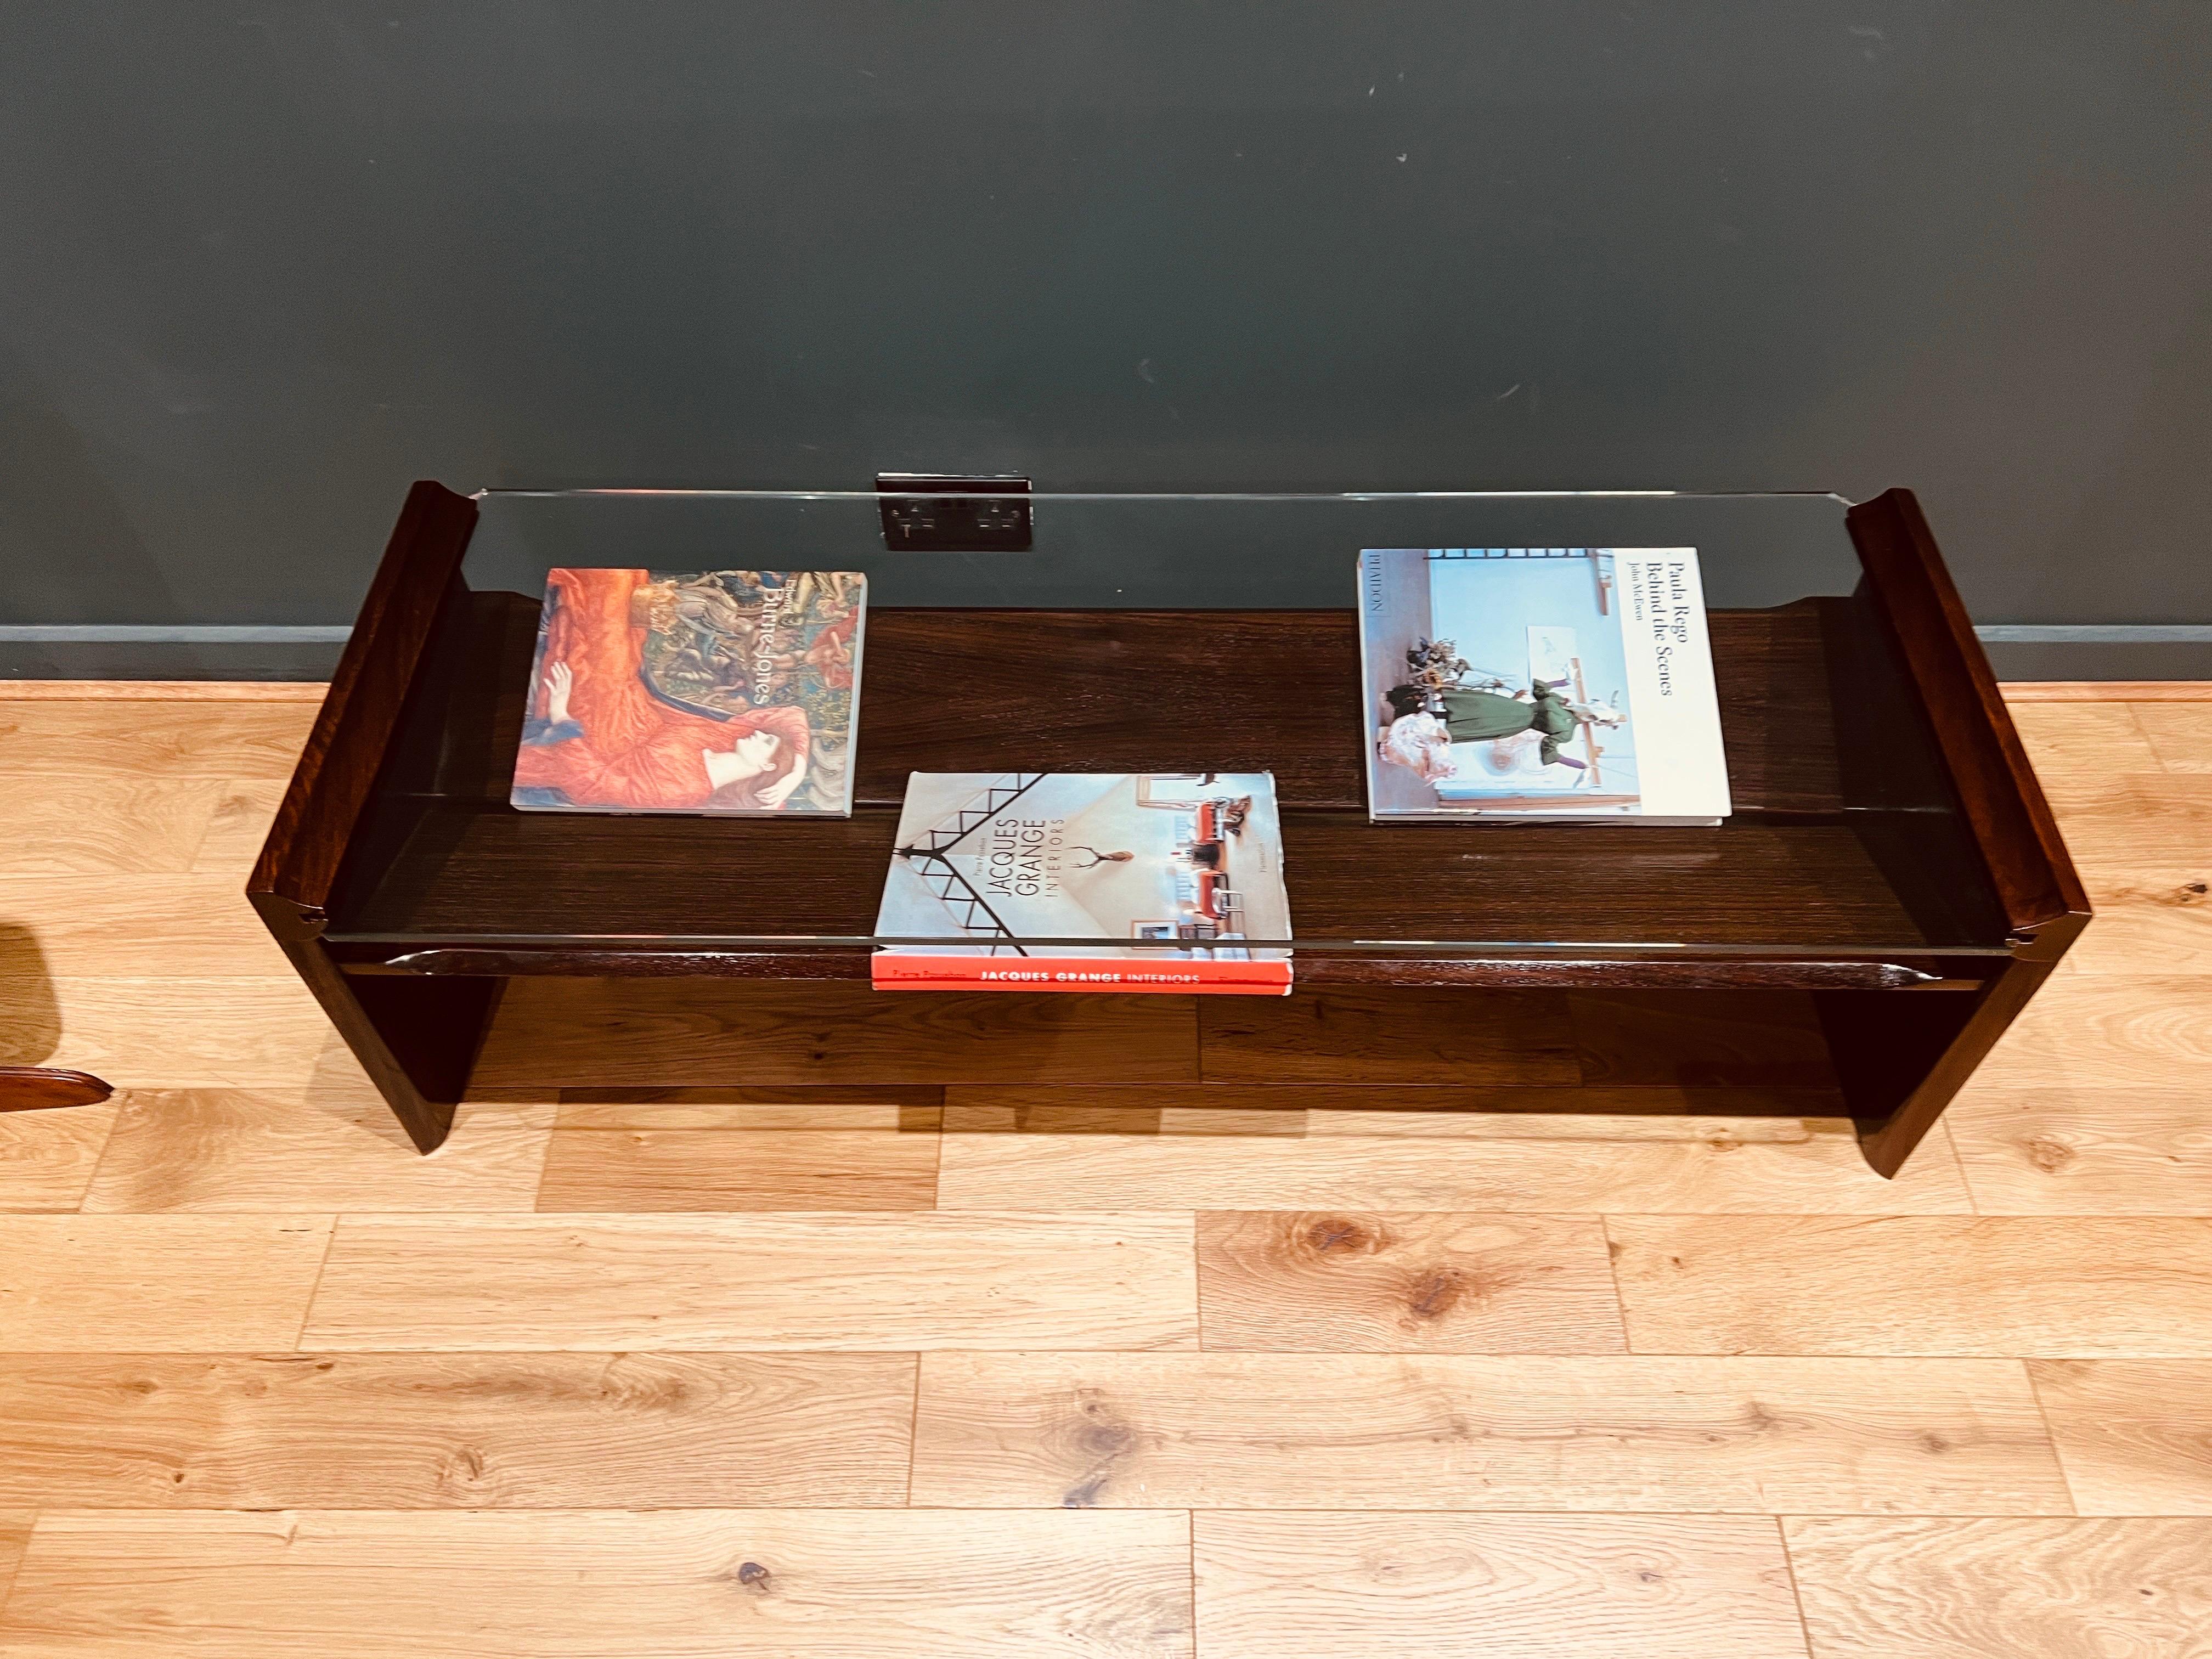 Table basse rectangulaire en placage de bois foncé et verre taillé, avec deux plateaux en bois sous-jacents pour exposer des livres ou des magazines. .
Produit en Italie dans les années 1960 